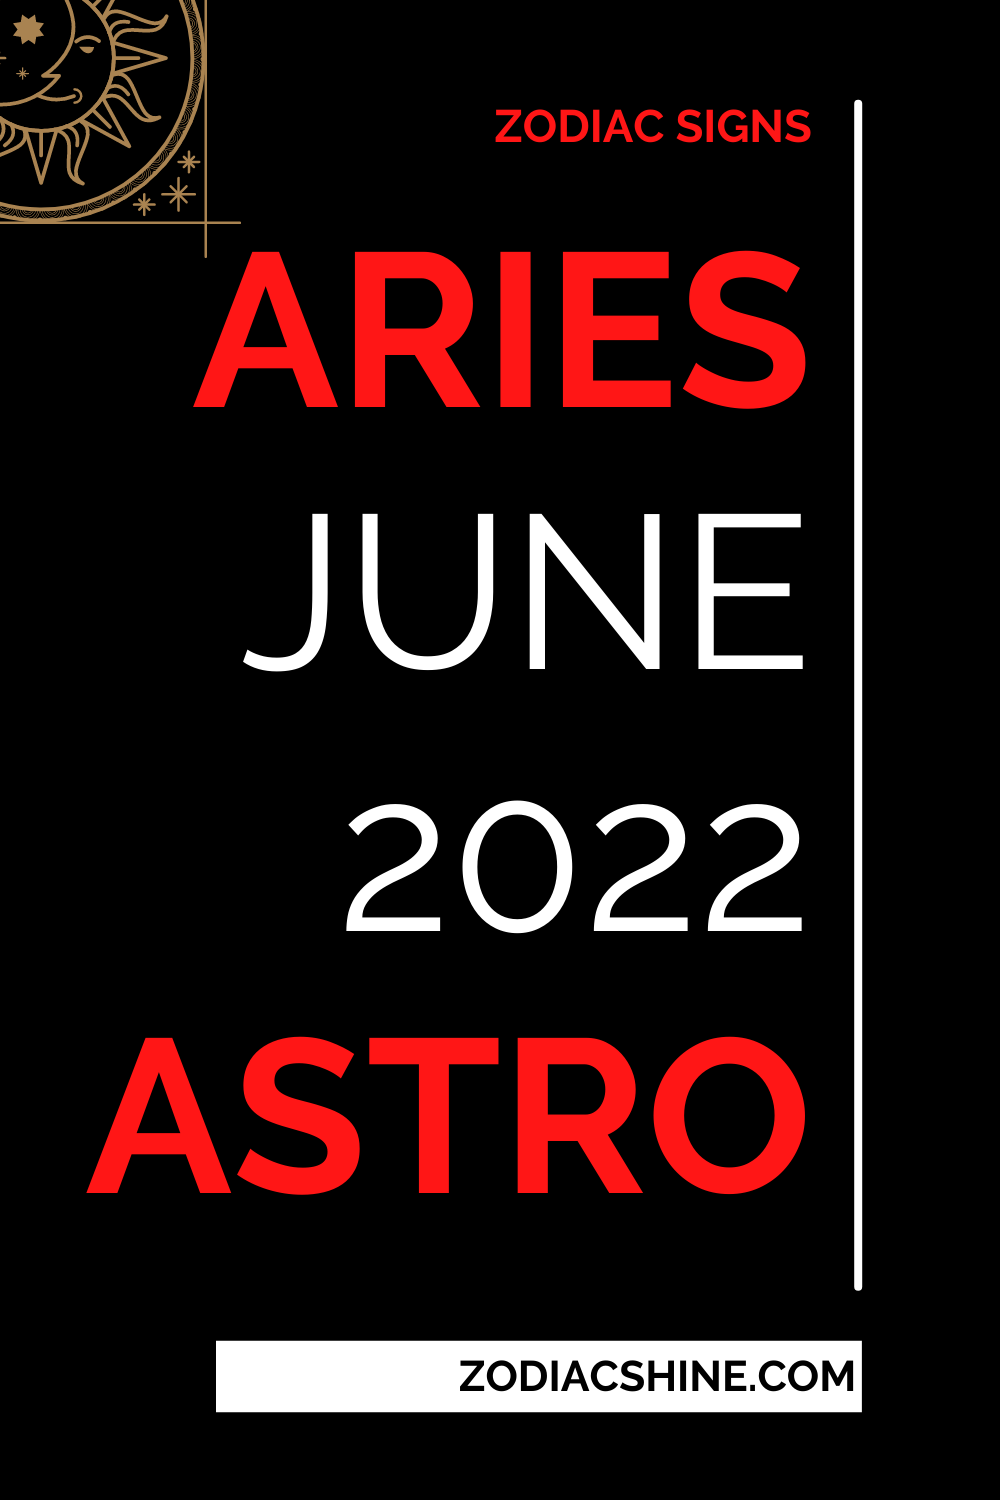 Aries June 2022 Astro